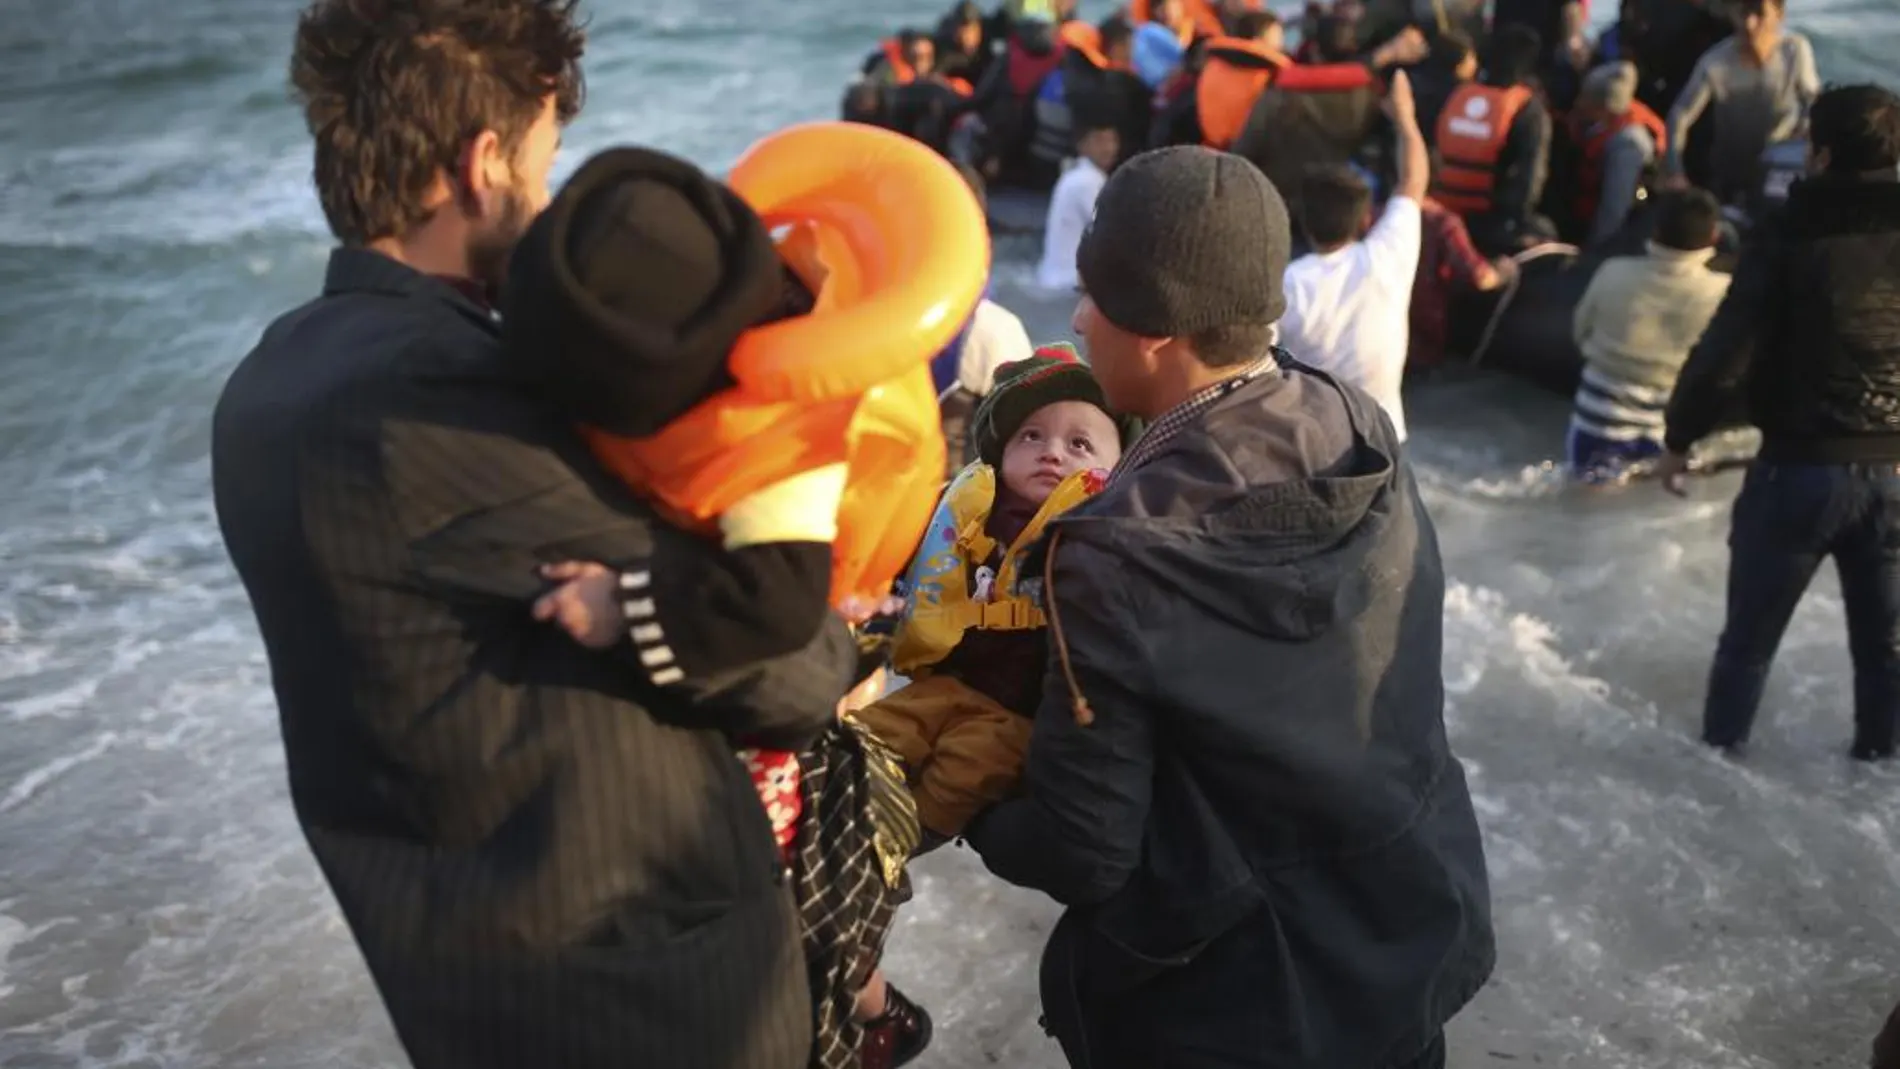 Ayer, otros 21 refugiados perdían al vida en el mar